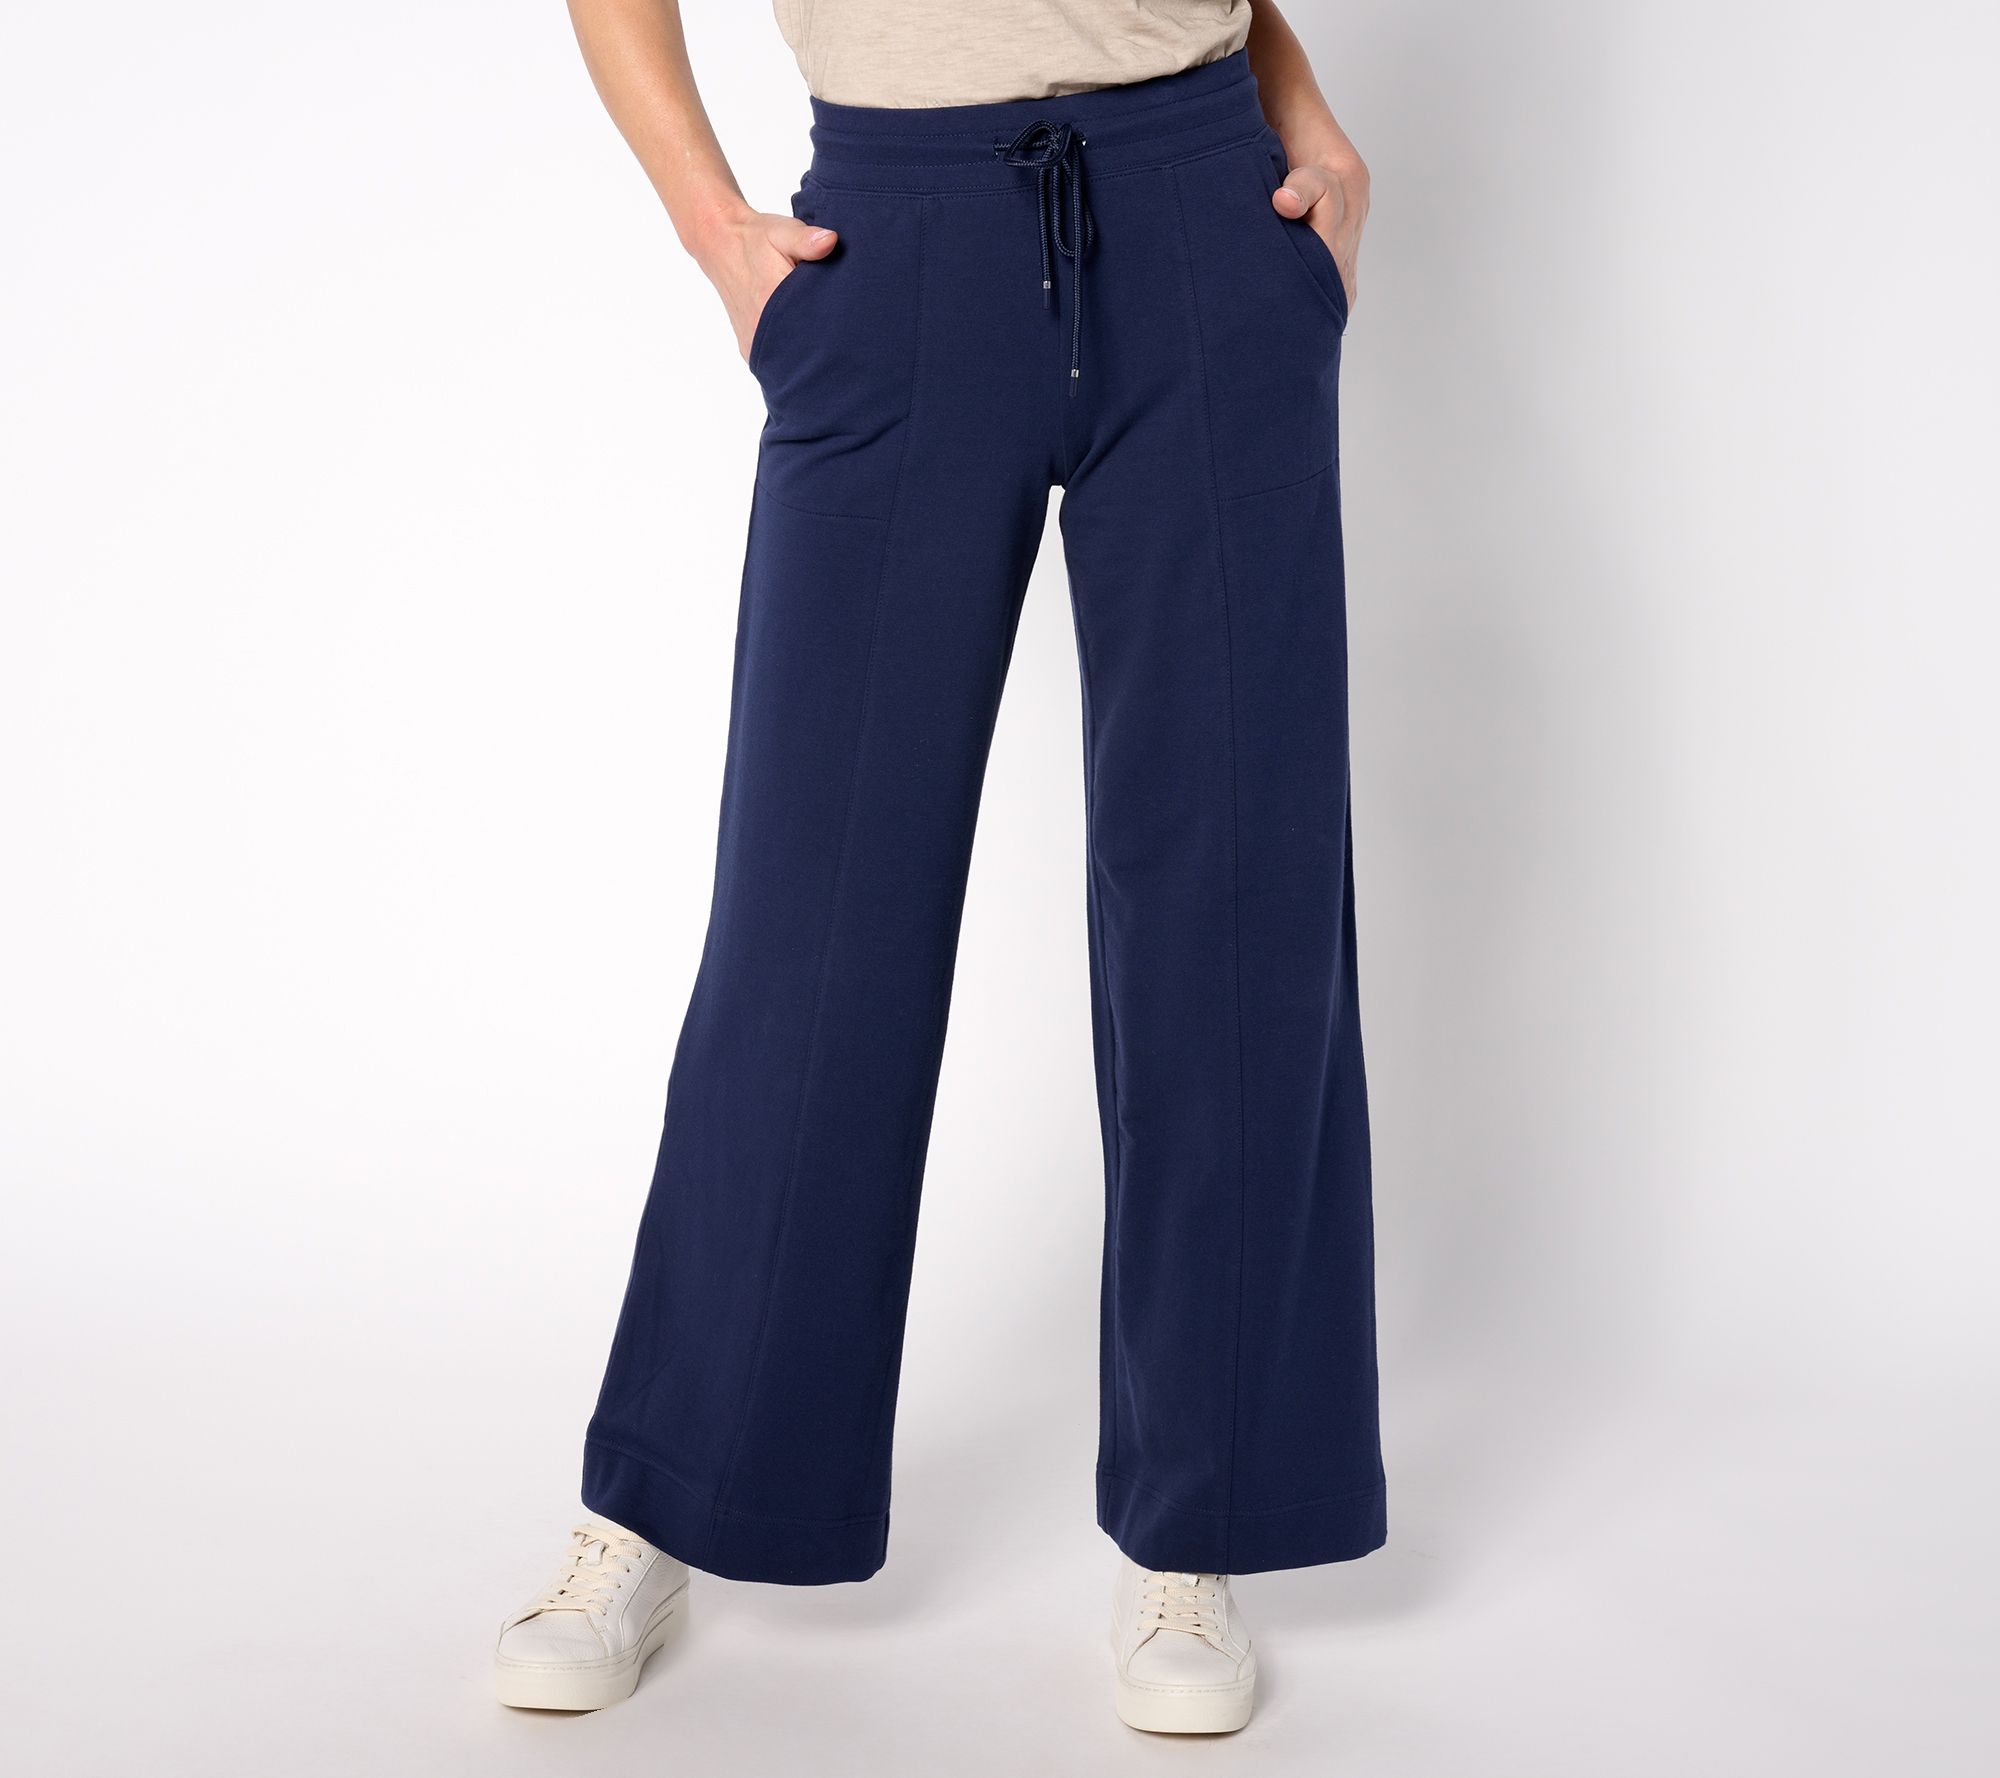 Plus Size Women's Printed Shirt Elegant Wide Leg Pants Fashion Casual Suit  - The Little Connection